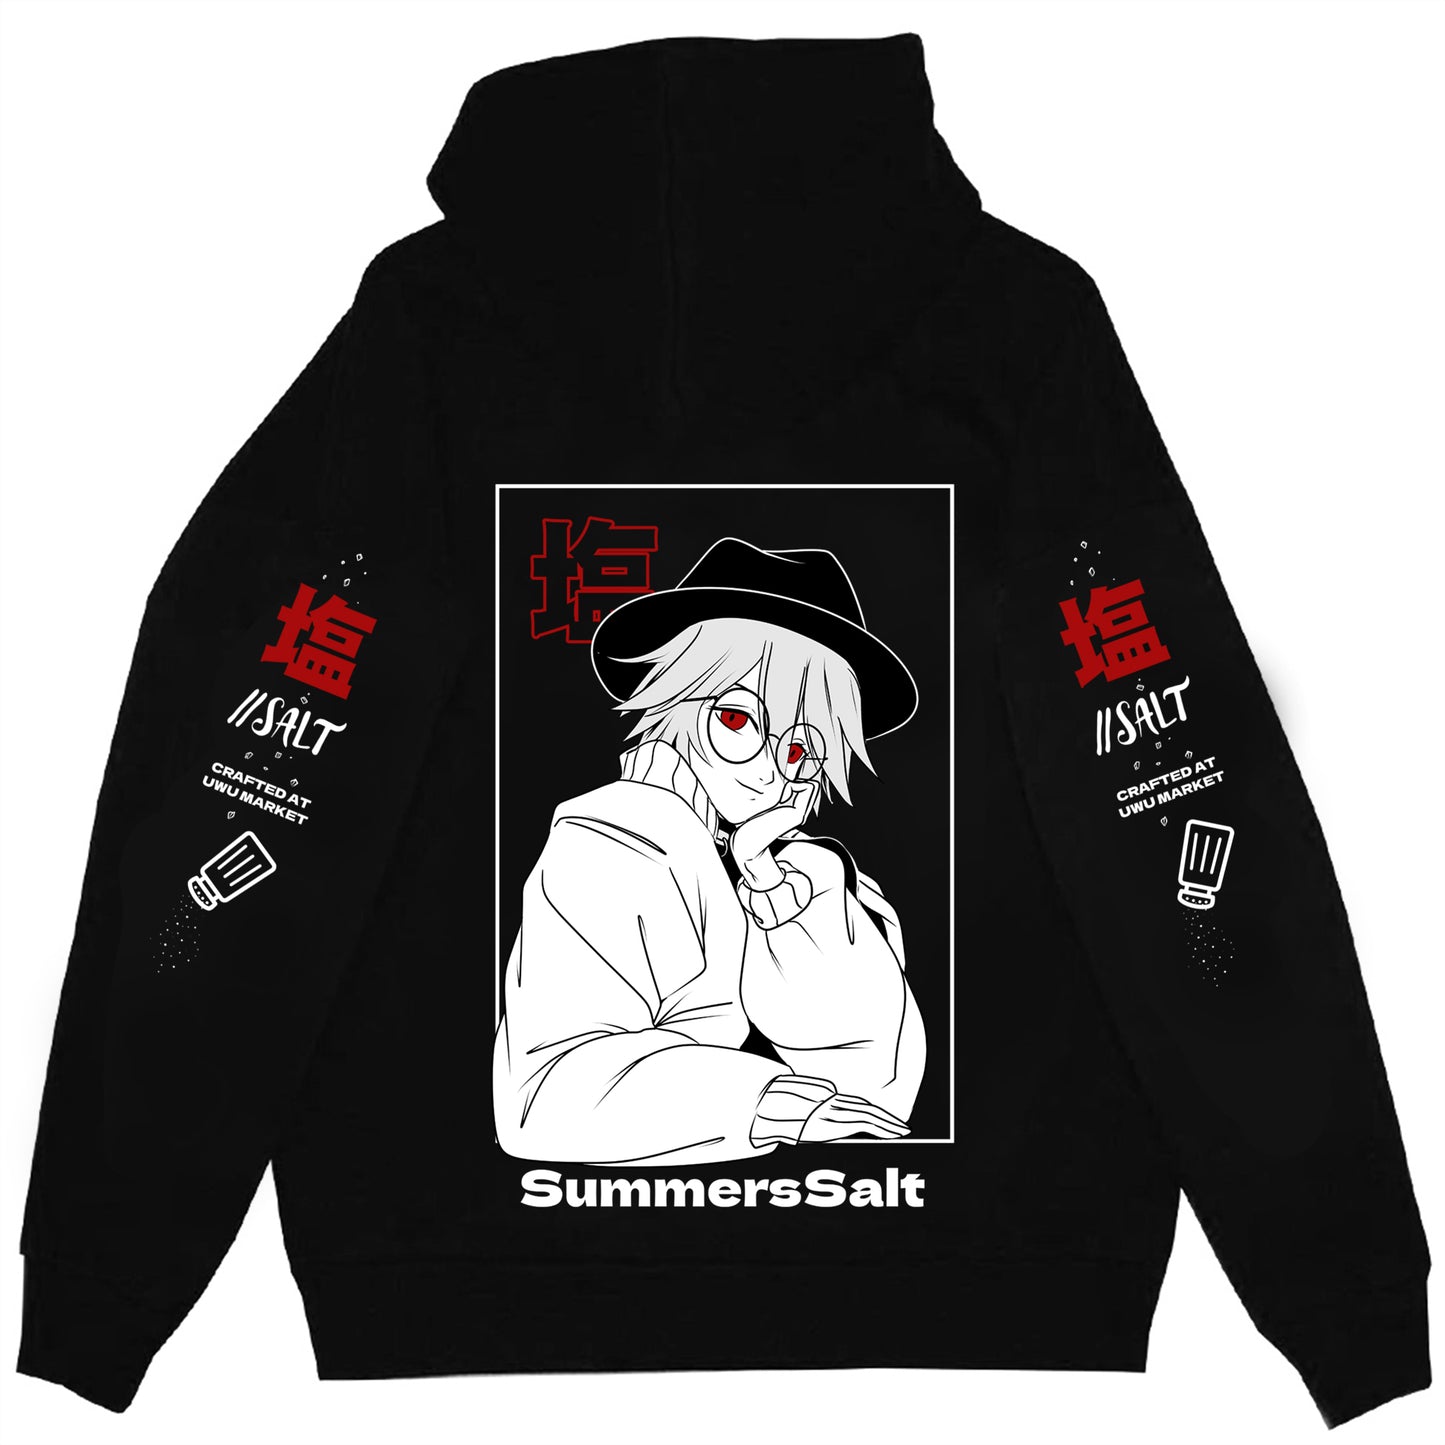 SummerSalt "Salt" Streetwear Hoodie